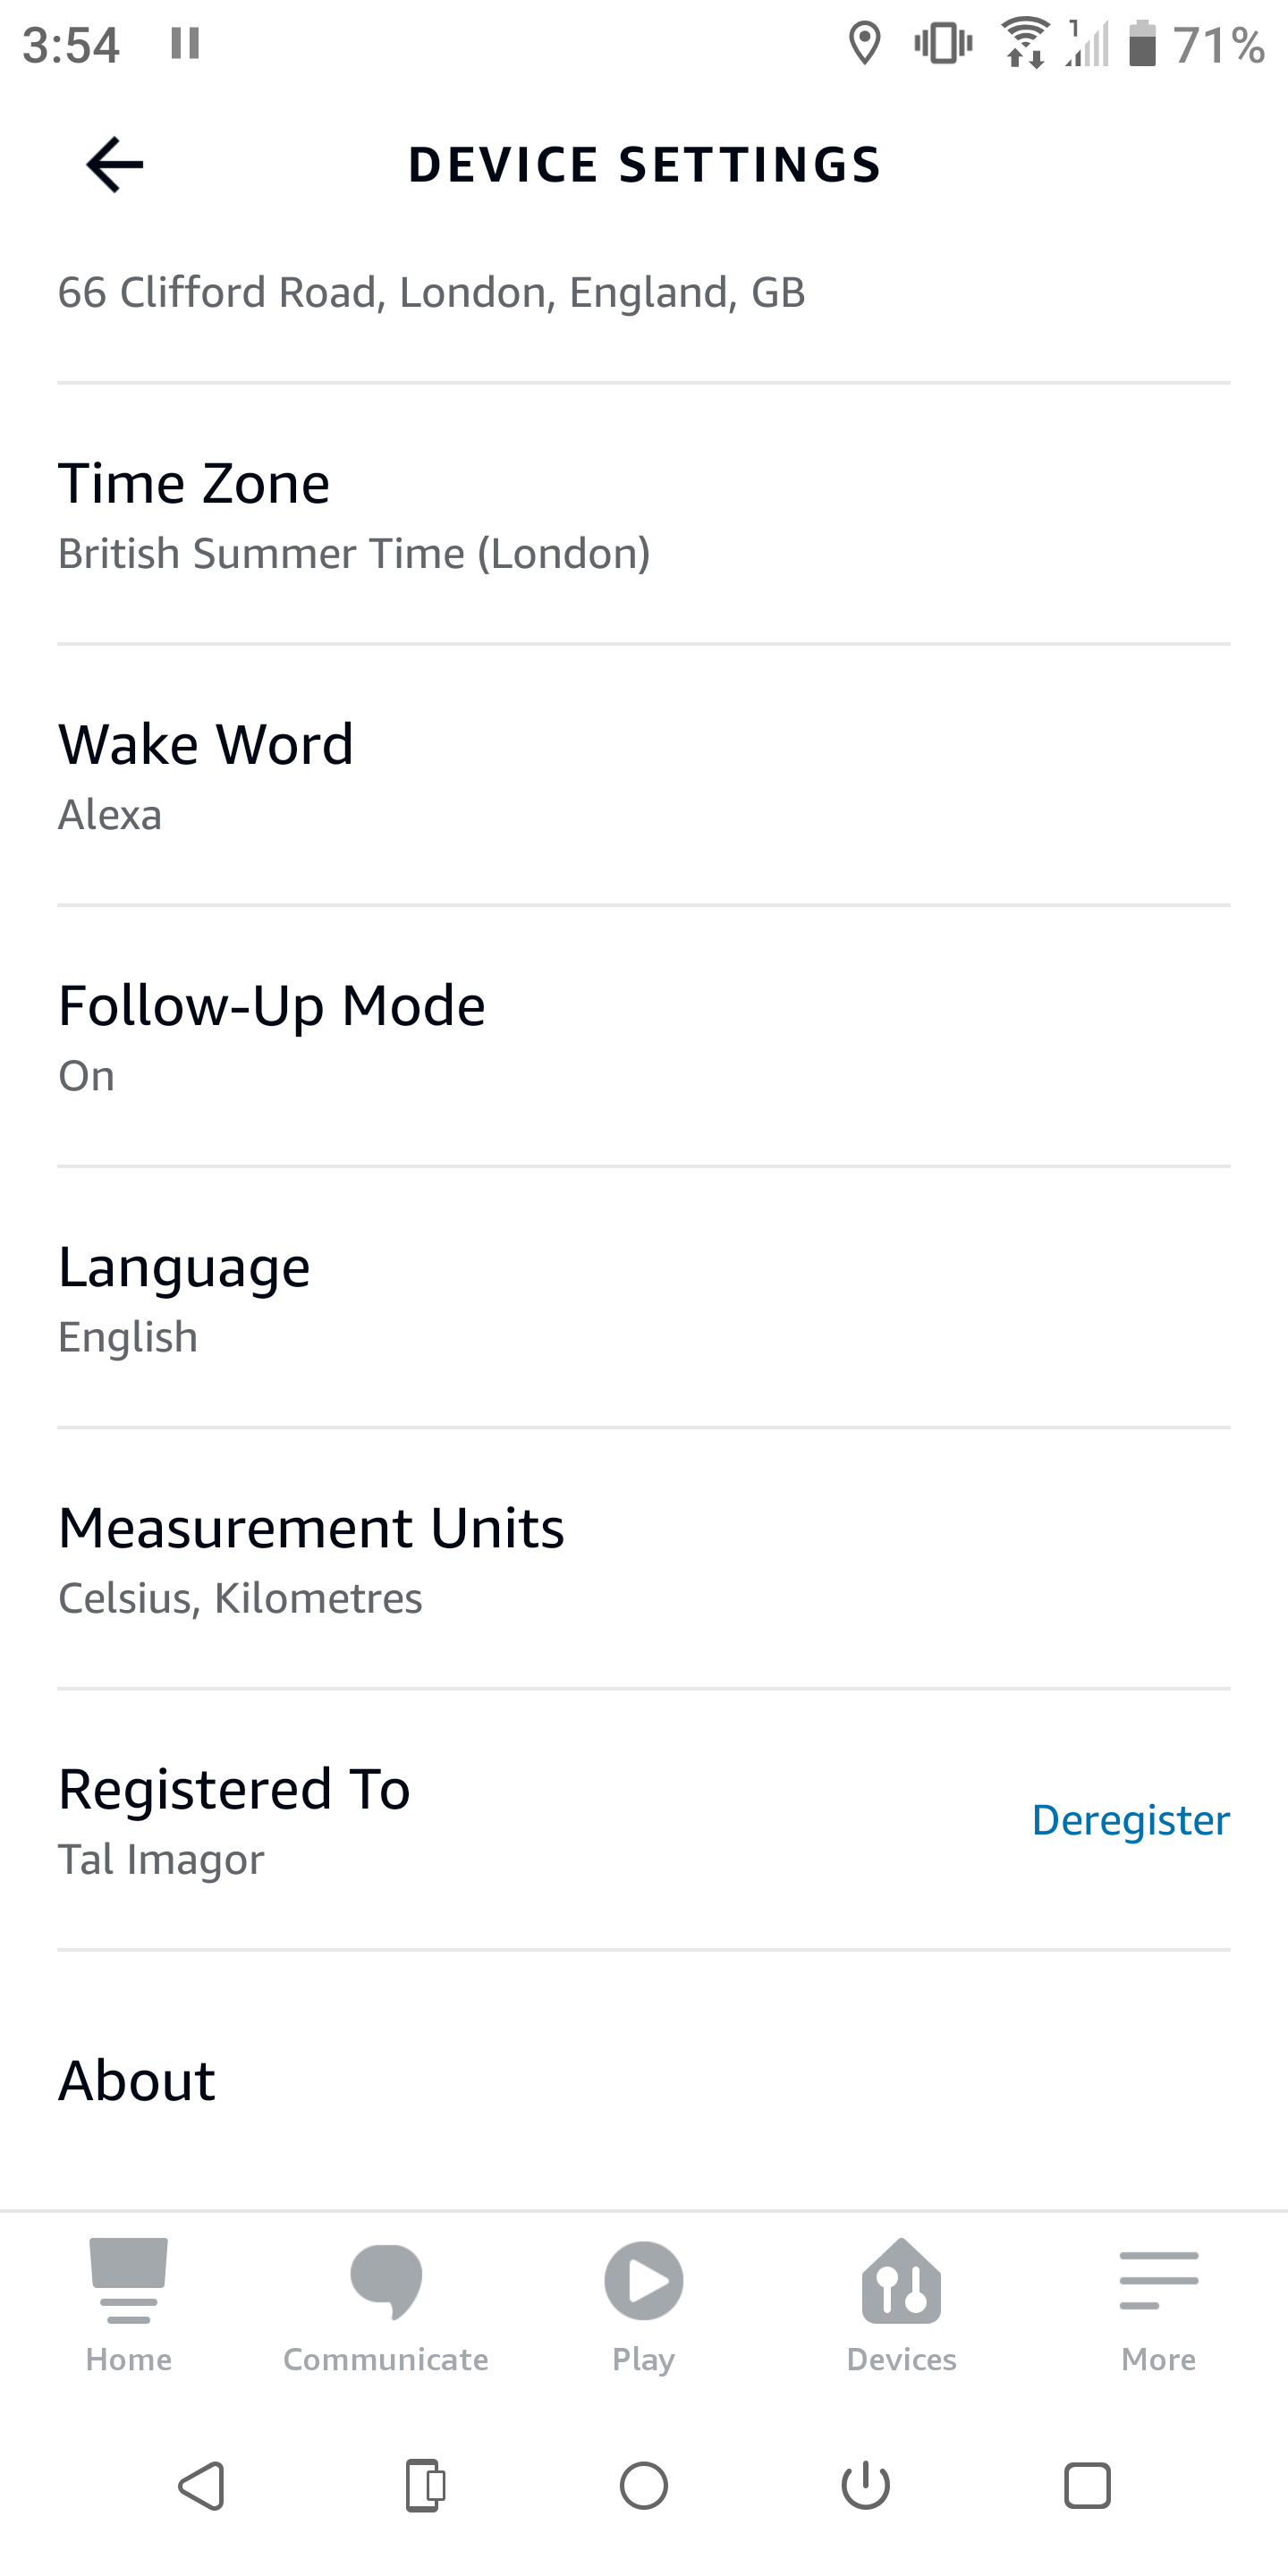 Alexa app registered